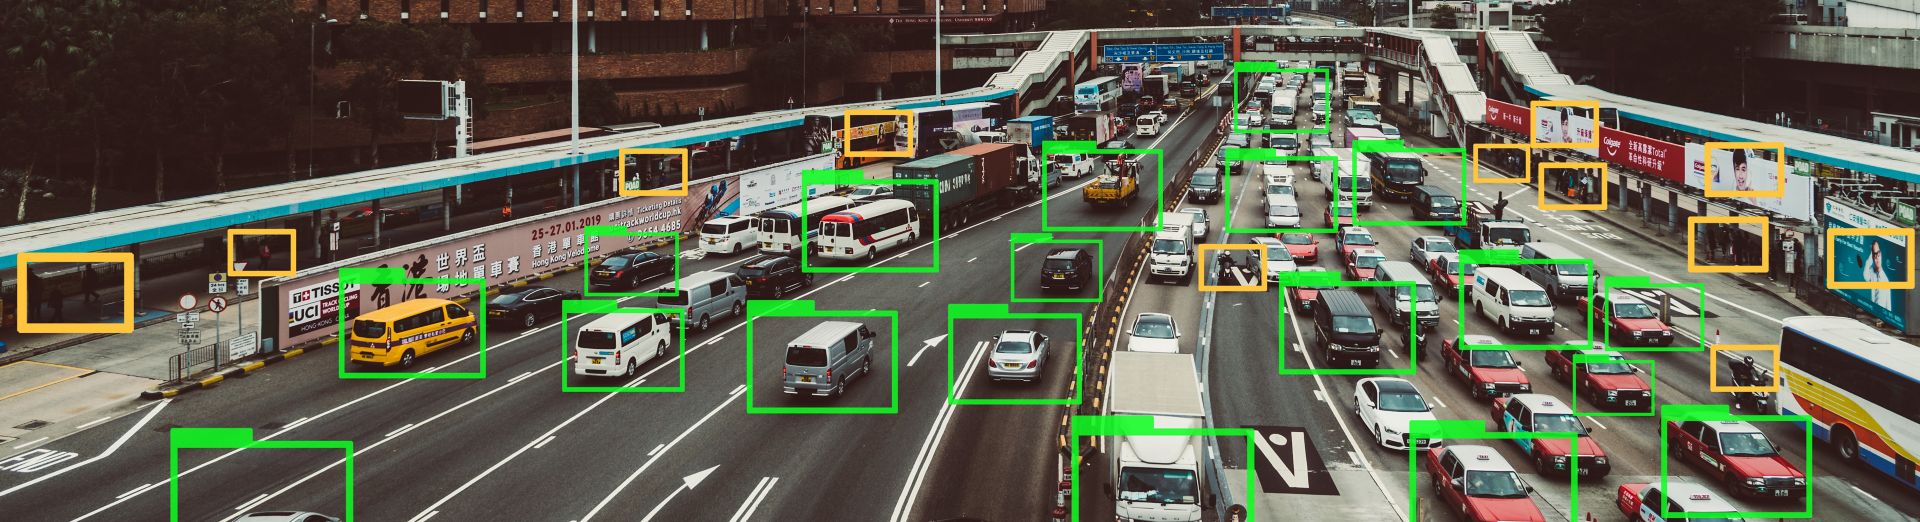 高速道路の自動車を追跡する機械学習テクノロジー